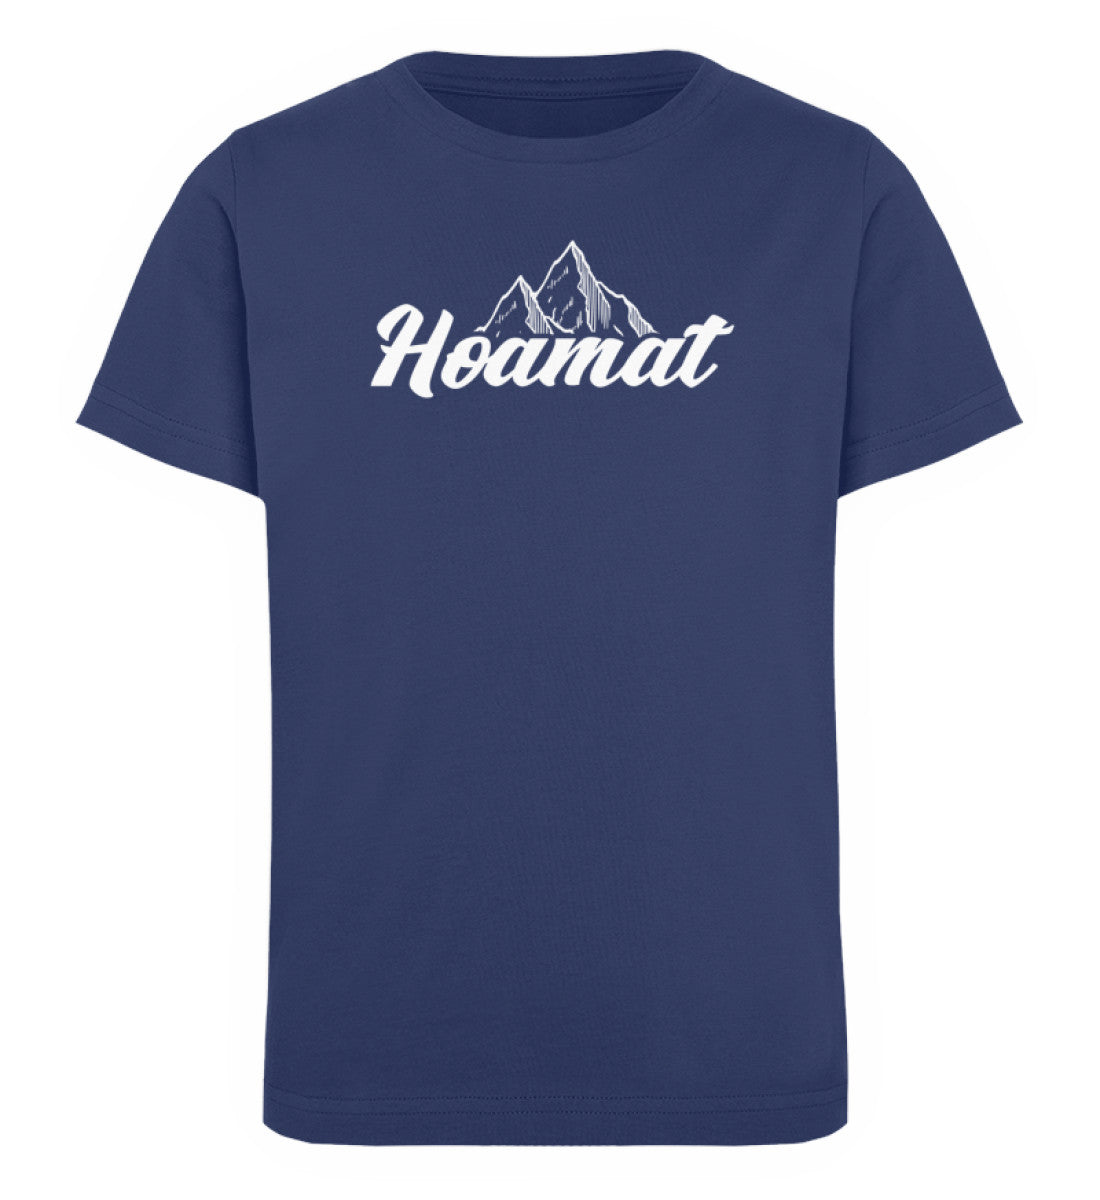 Hoamat - Kinder Premium Organic T-Shirt berge Navyblau